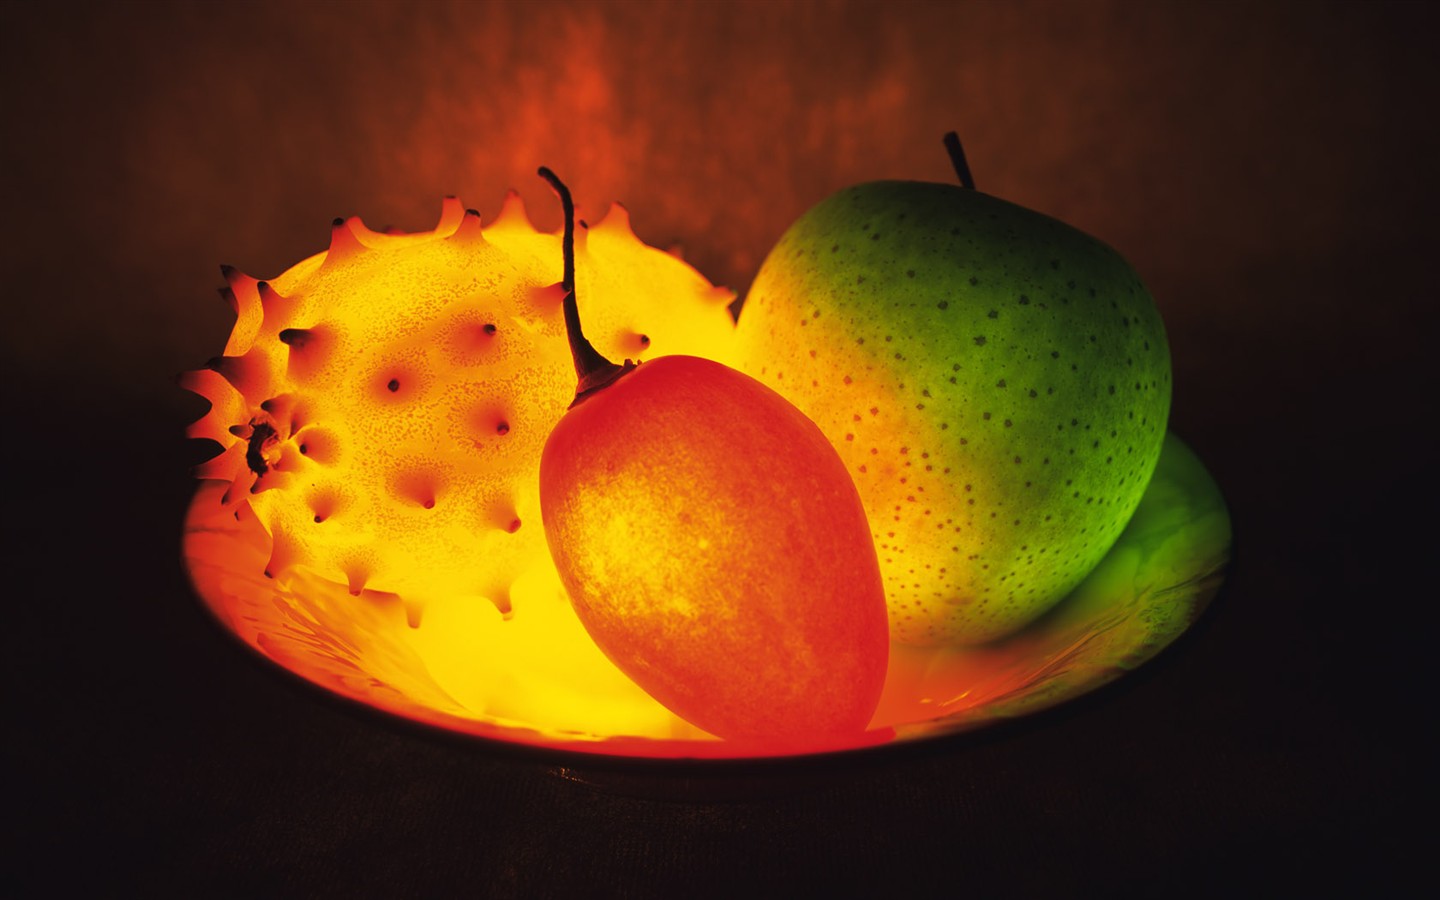 Entité fruits lumière (2) #1 - 1440x900